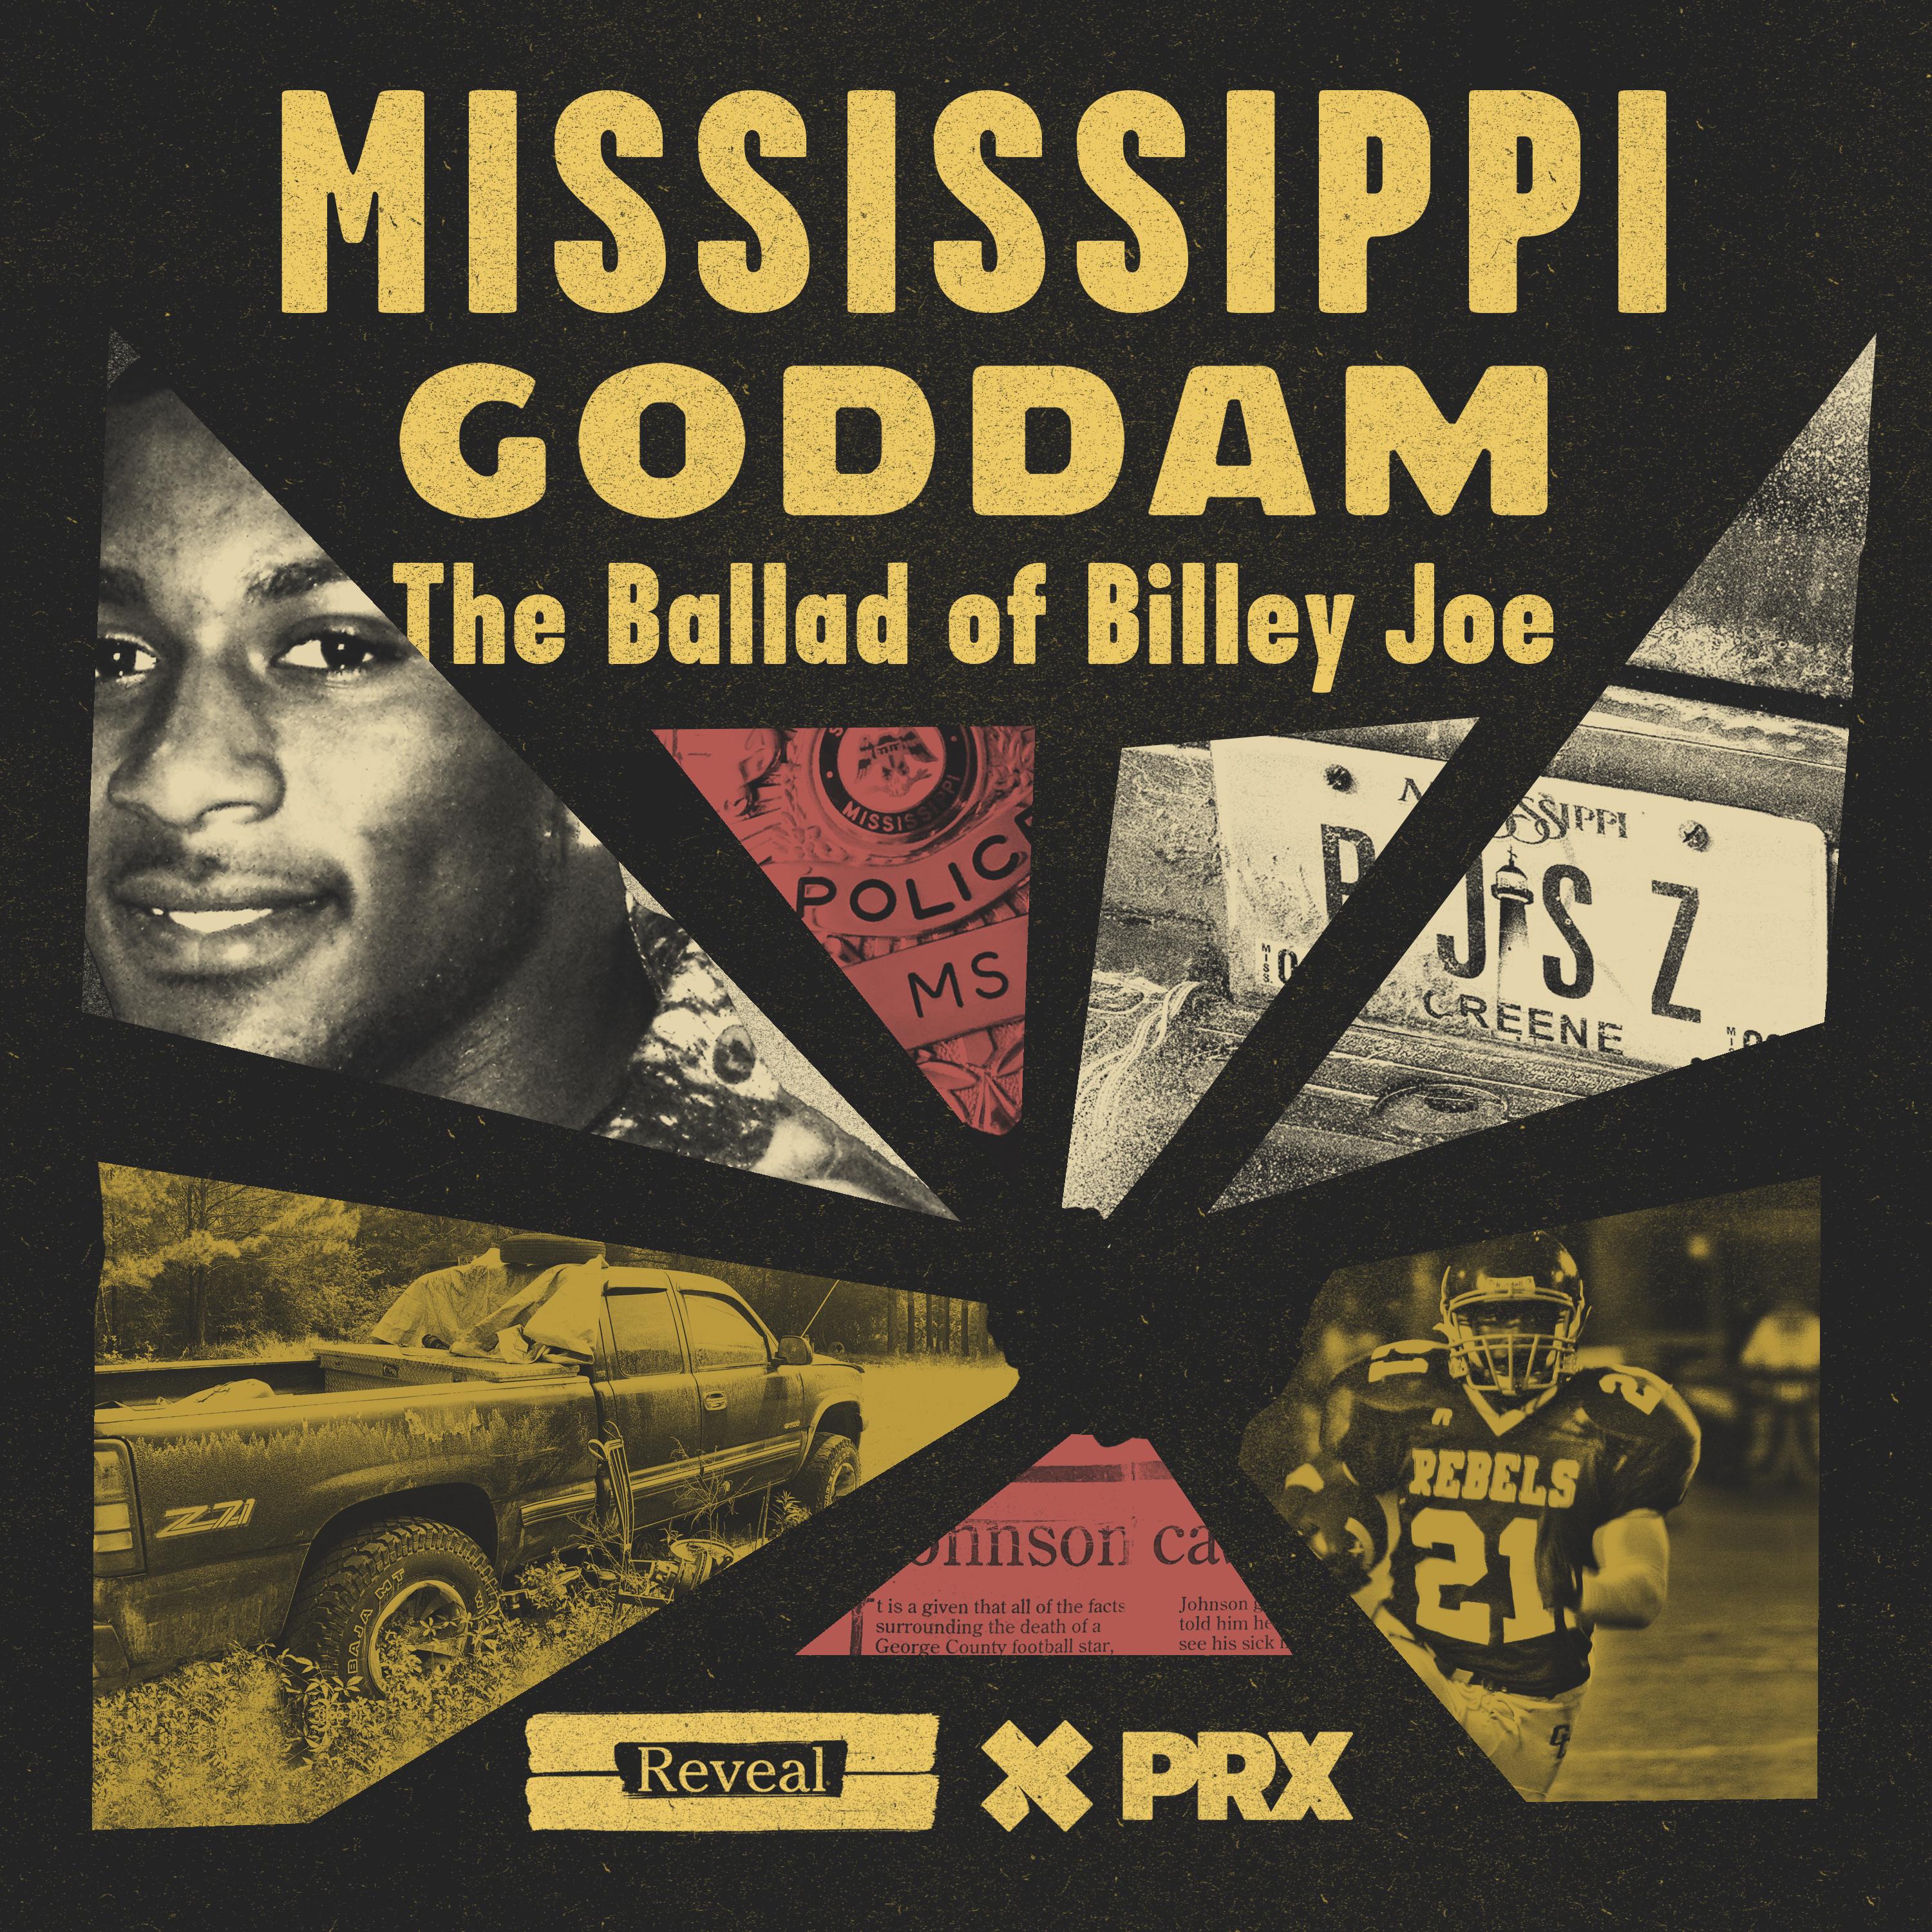 Thumbnail for "Mississippi Goddam Chapter 4: The Investigator".